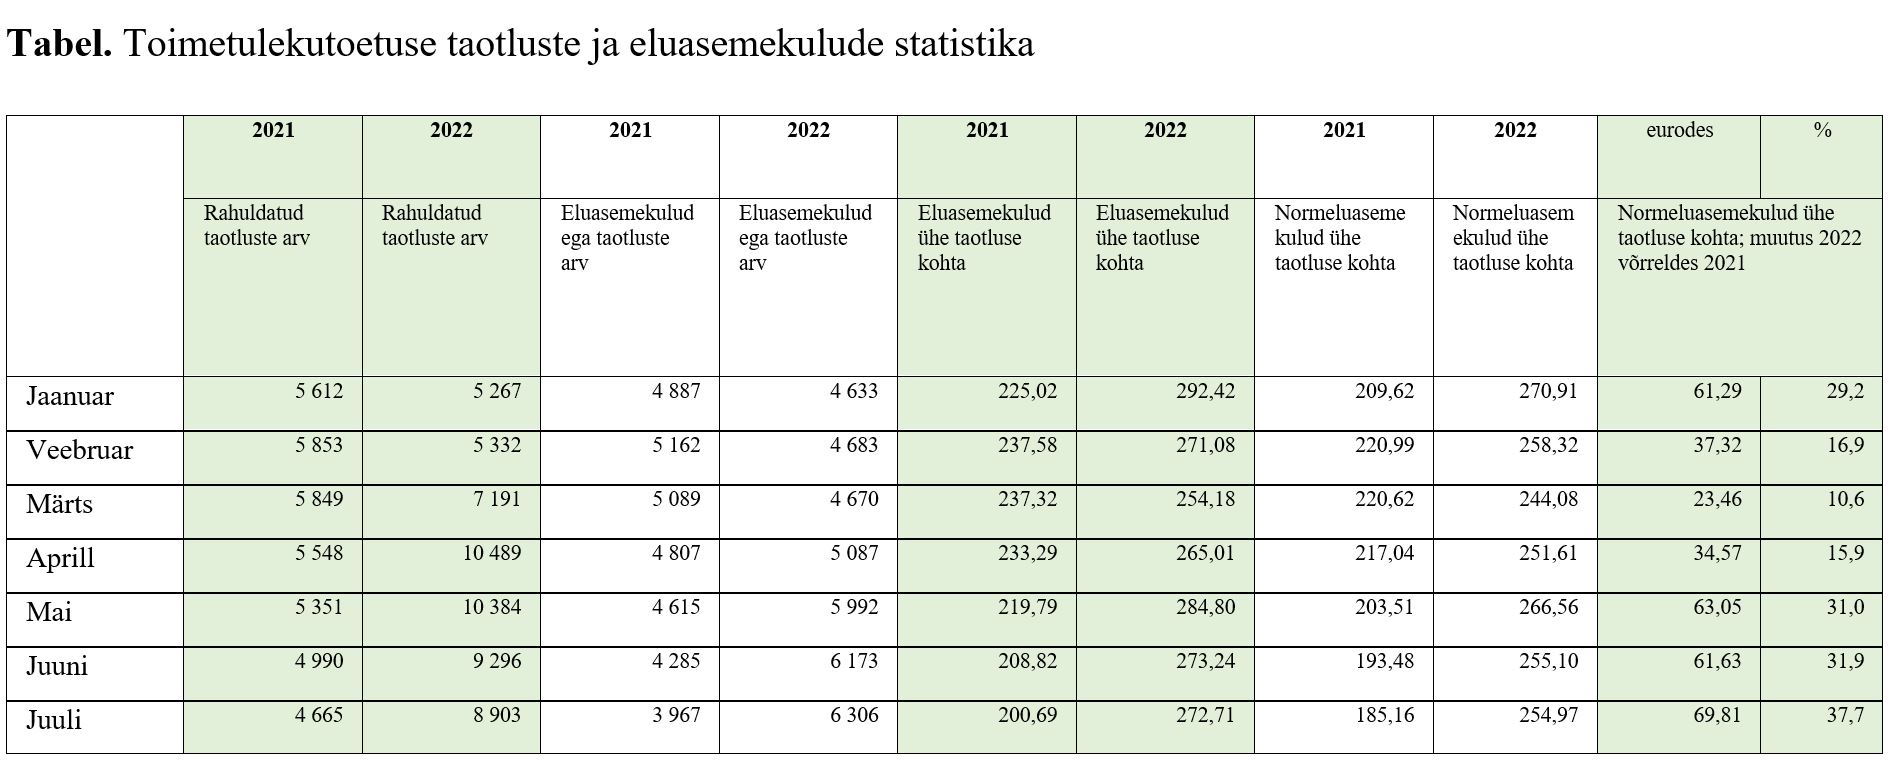 Tabel toimetulekutoetuse taotluste ja eluasemekulude statistikaga